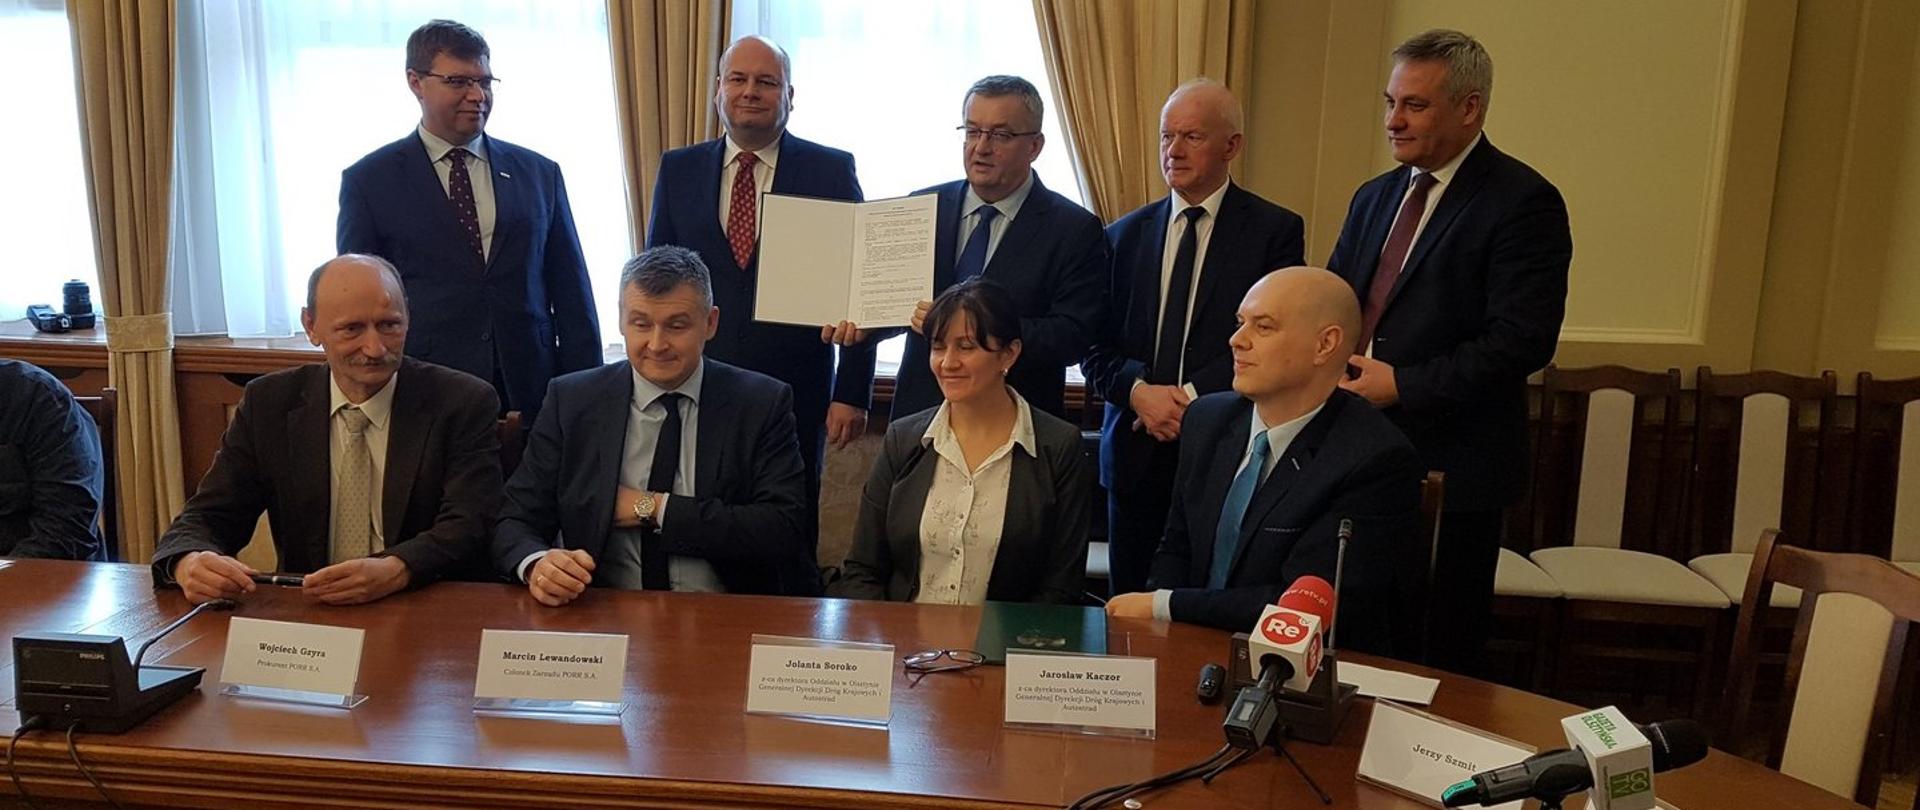 Podpisanie umowy na obwodnicę Nowego Miasta Lubawskiego 